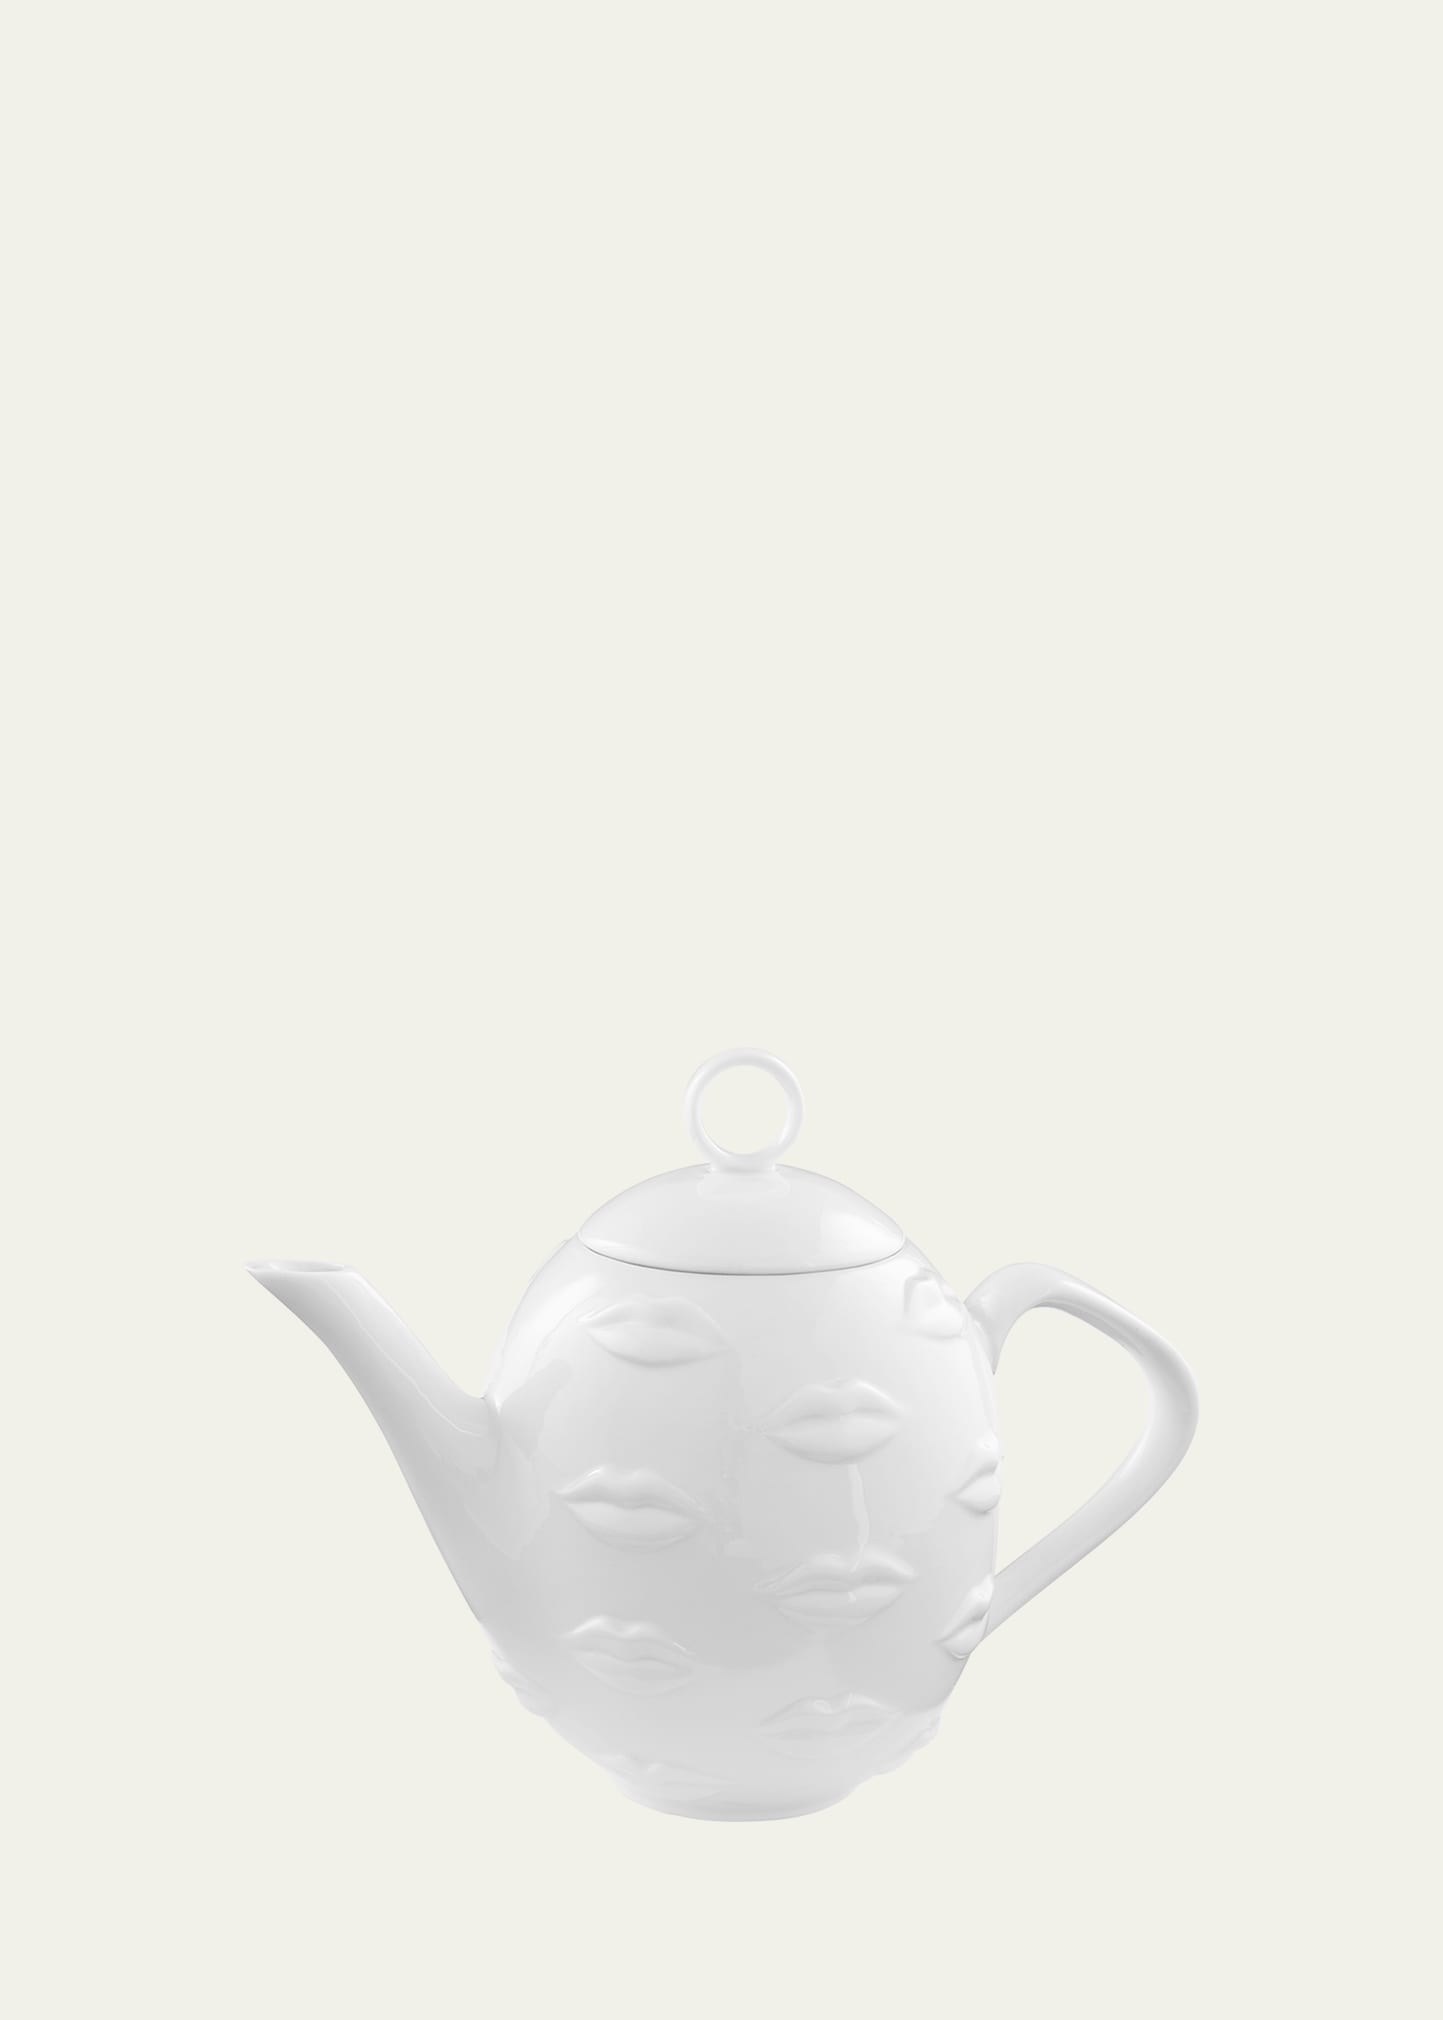 Jonathan Adler Gala Teapot, White